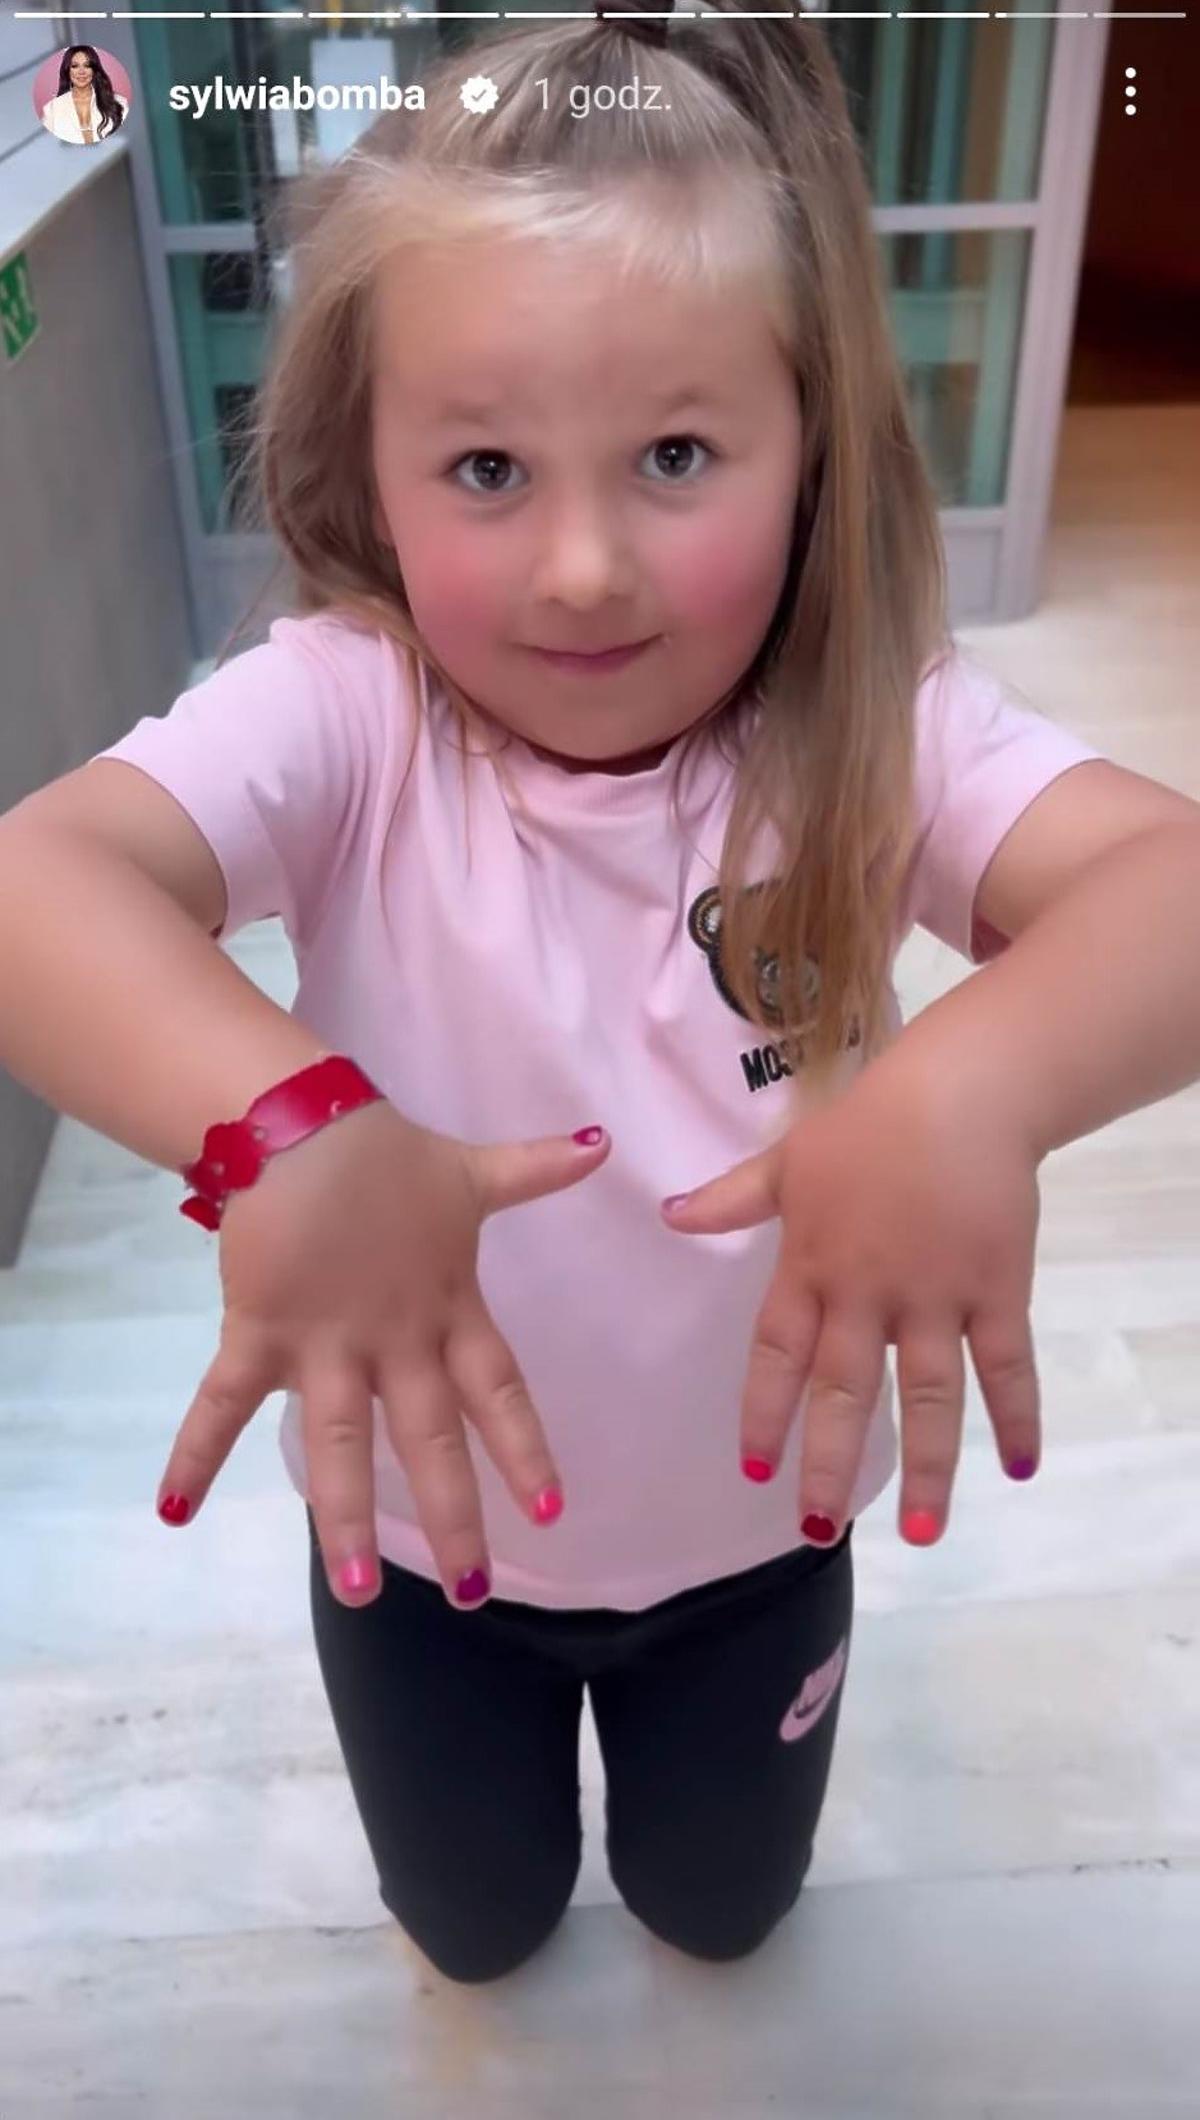 Córka Sylwii Bomby maluje paznokcie u kosmetyczki